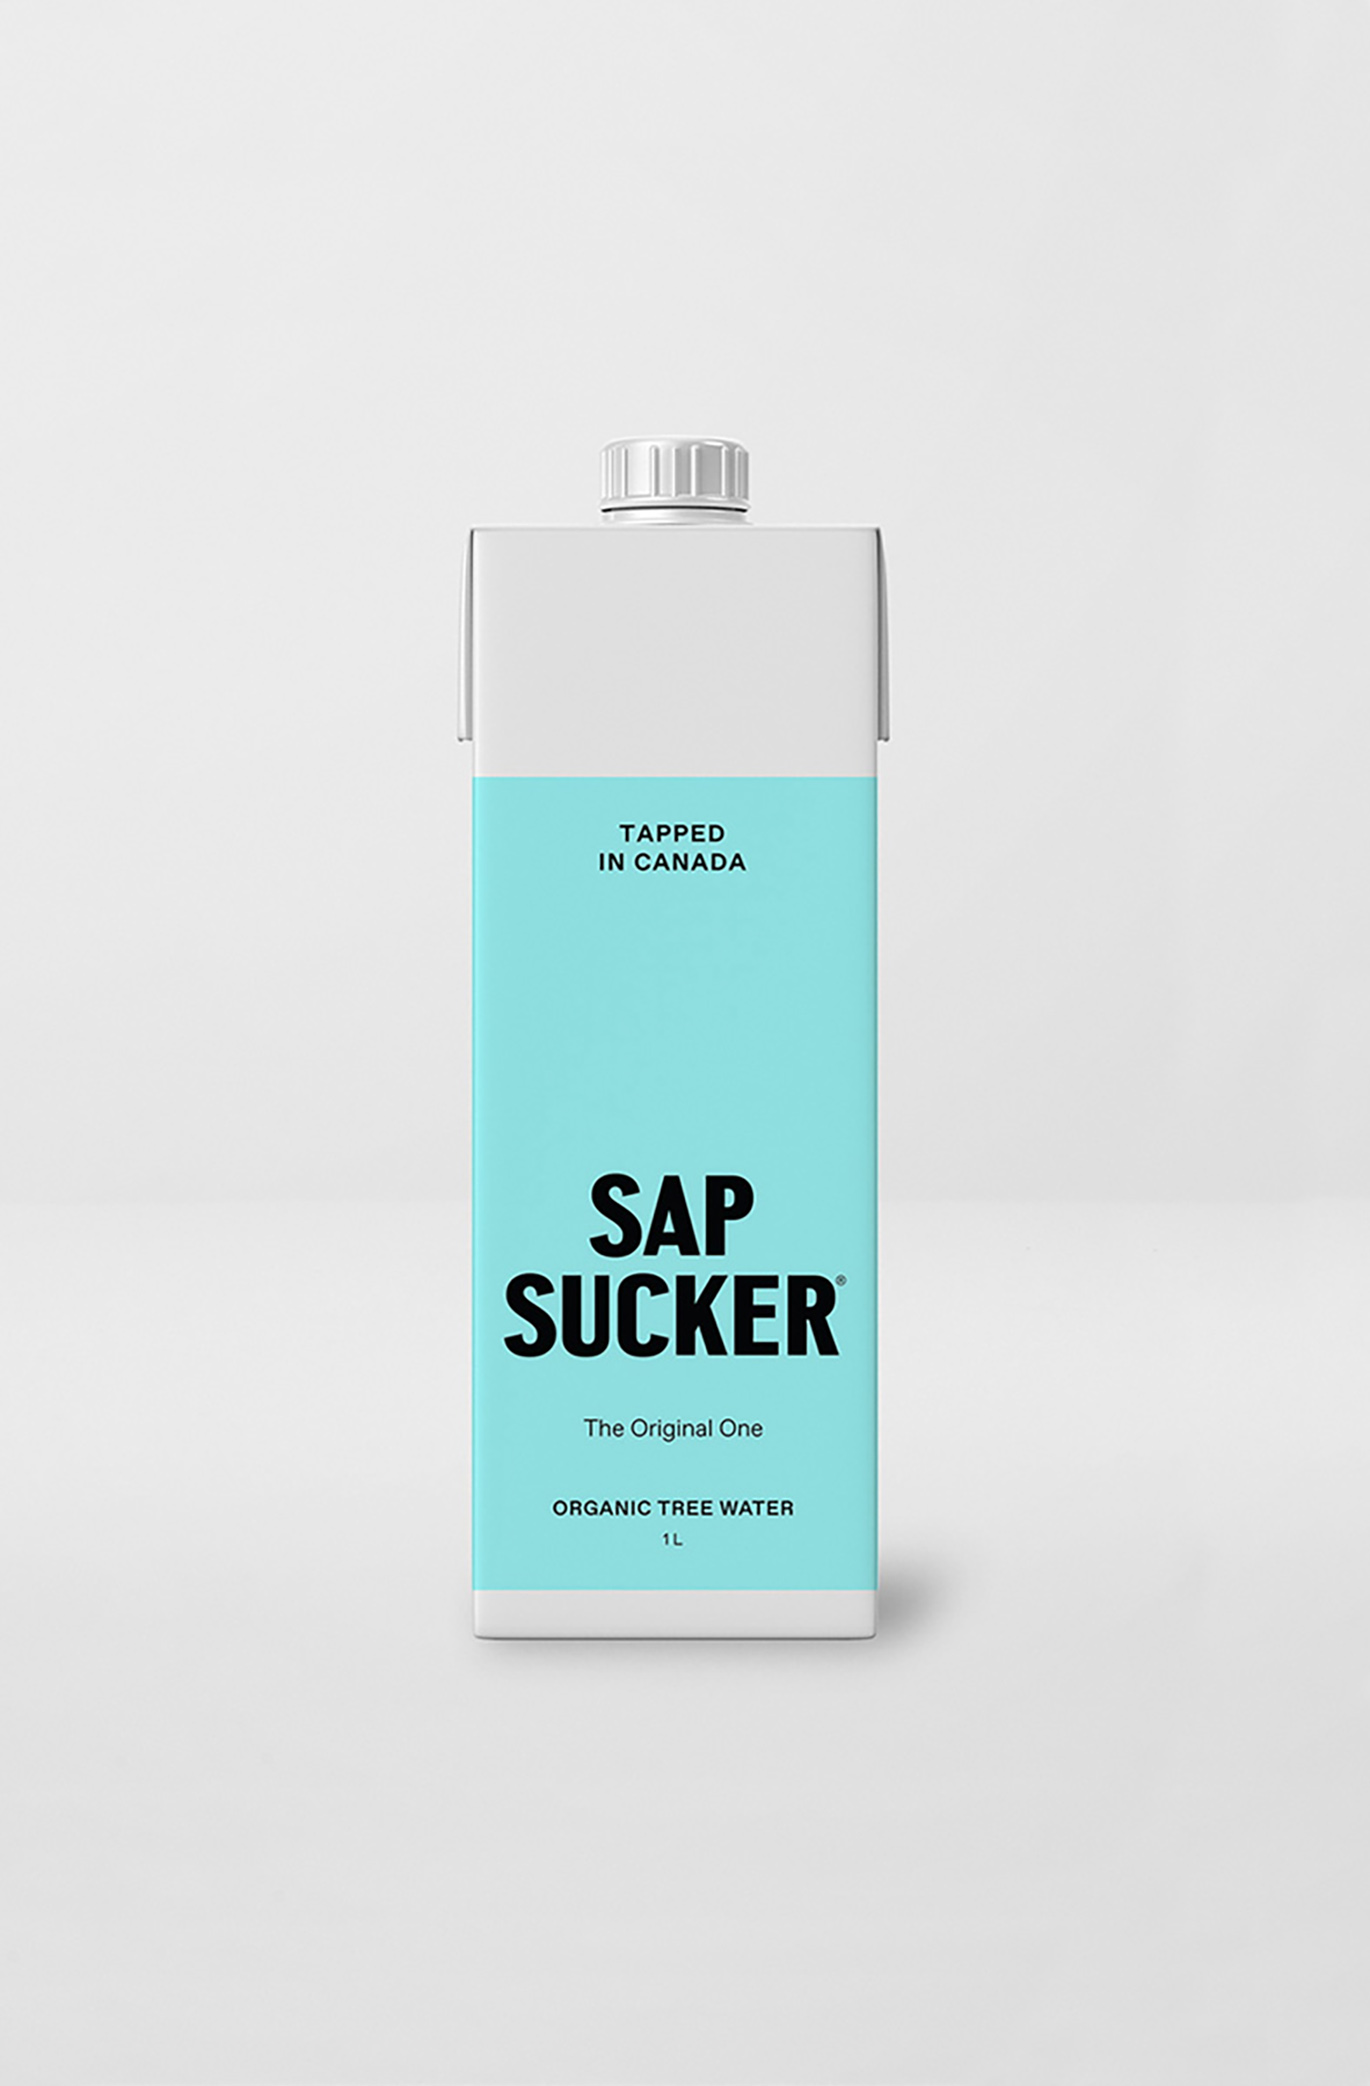 Sapsucker碳酸饮料品牌启用全新的品牌视觉VI形象系统-深圳VI设计10